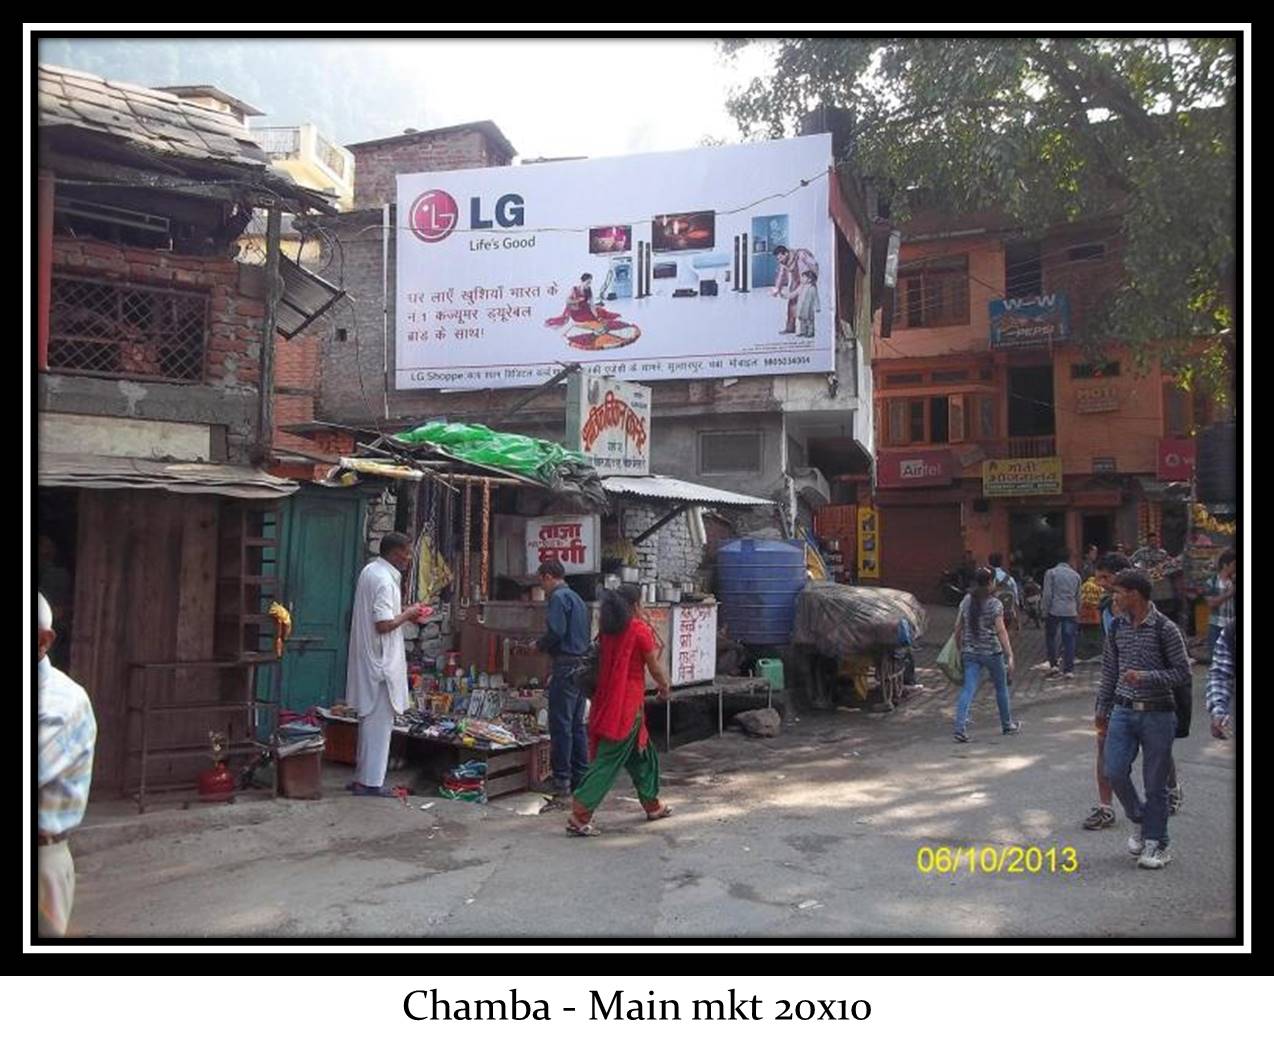 Main market, Chamba